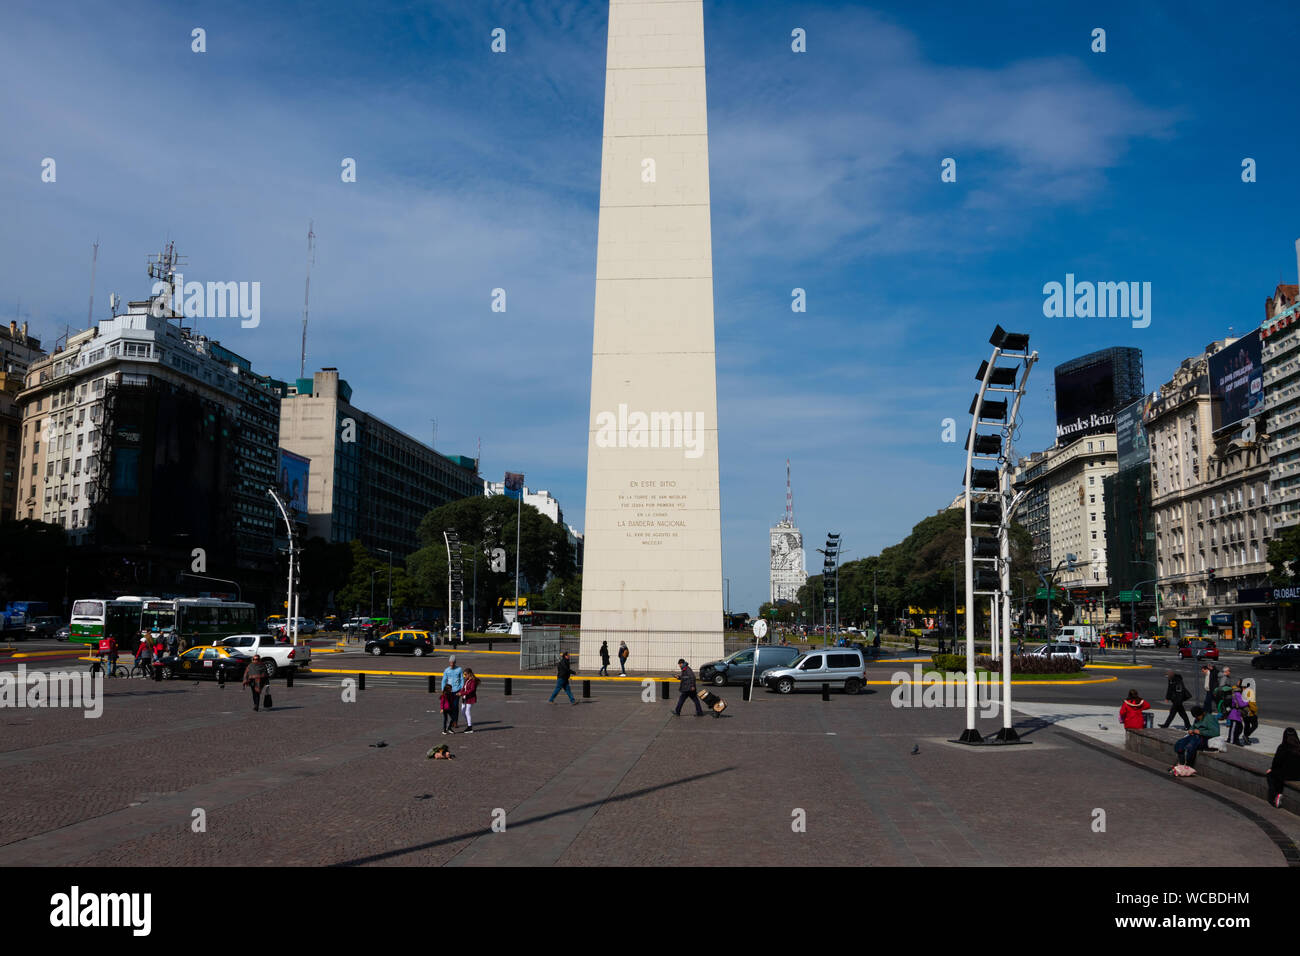 Buenos Aires, Argentina. Agosto 19, 2019. Obelisco di Buenos Aires (El Obelisco) un monumento storico nazionale si trova presso la Piazza della Repubblica (Plaza de la R Foto Stock